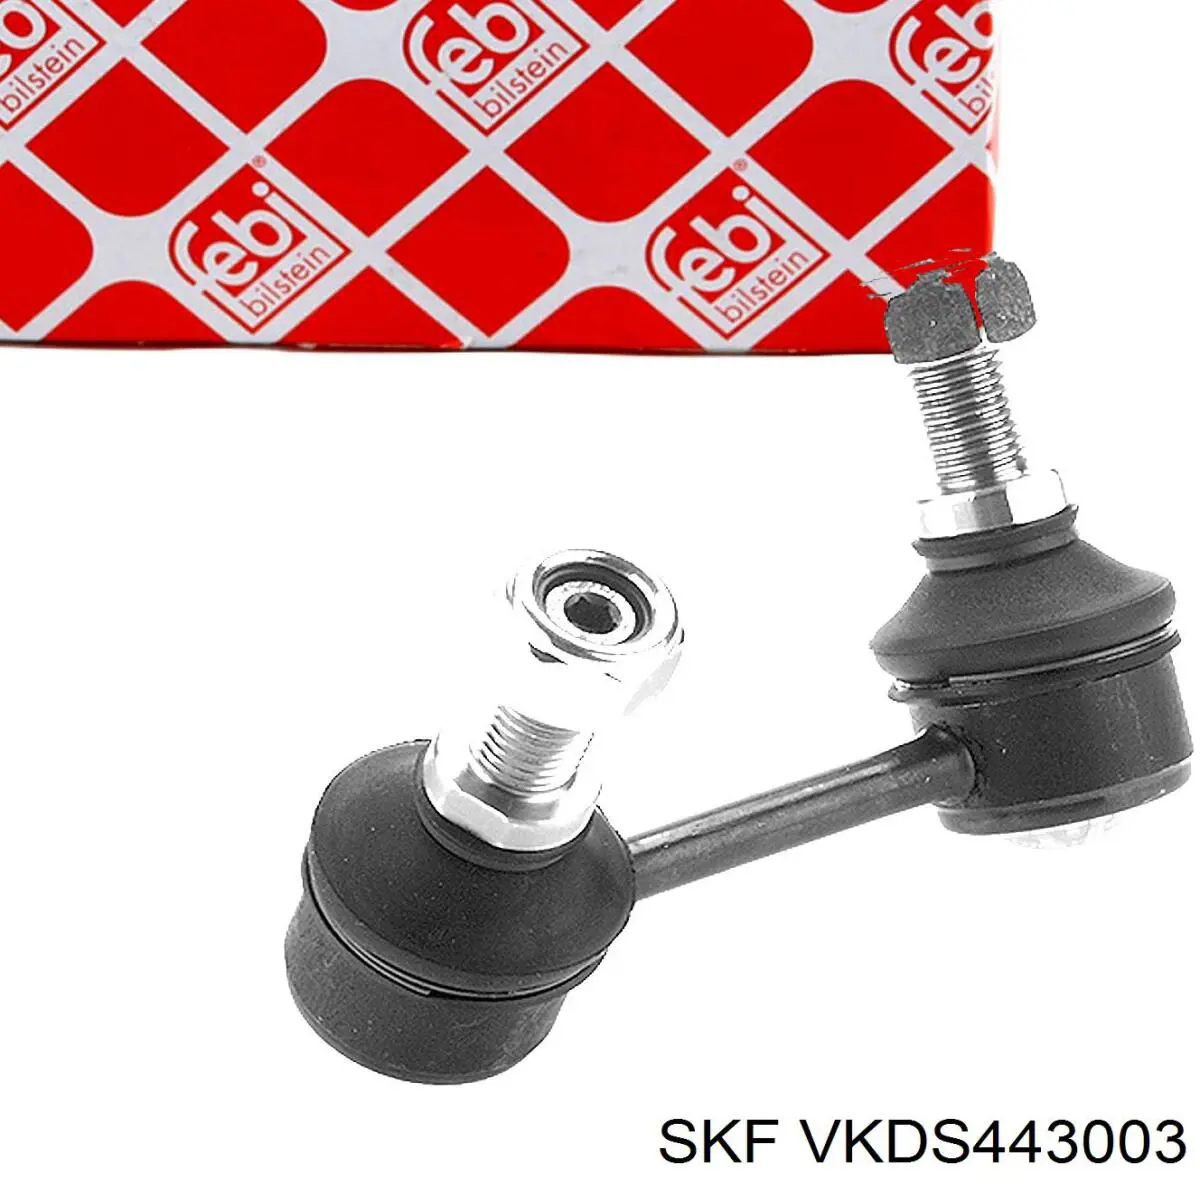 VKDS443003 SKF barra estabilizadora trasera izquierda